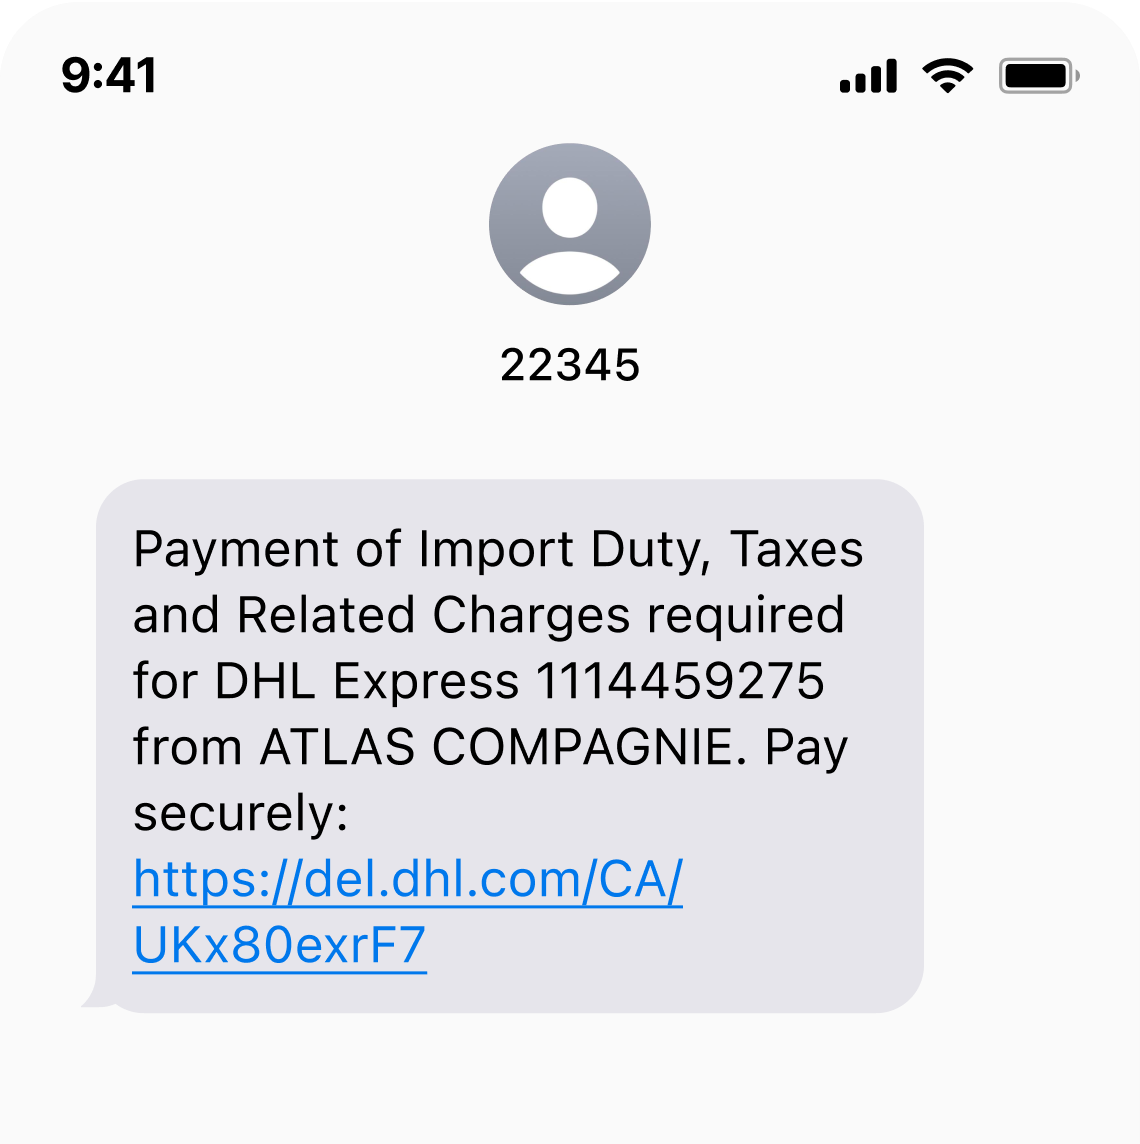 Capture d'écran d'une conversation SMS. Le numéro de téléphone de l'expéditeur est 22345. Le contenu du texto reçu est le suivant&nbsp;: «&nbsp;Payment of Import Duty, Taxes and Related Charges required for DHL Express 1114459275 from ATLAS COMPAGNIE. Pay securely: https://del.dhl.com/CA/UKx9-exrF7&nbsp;».